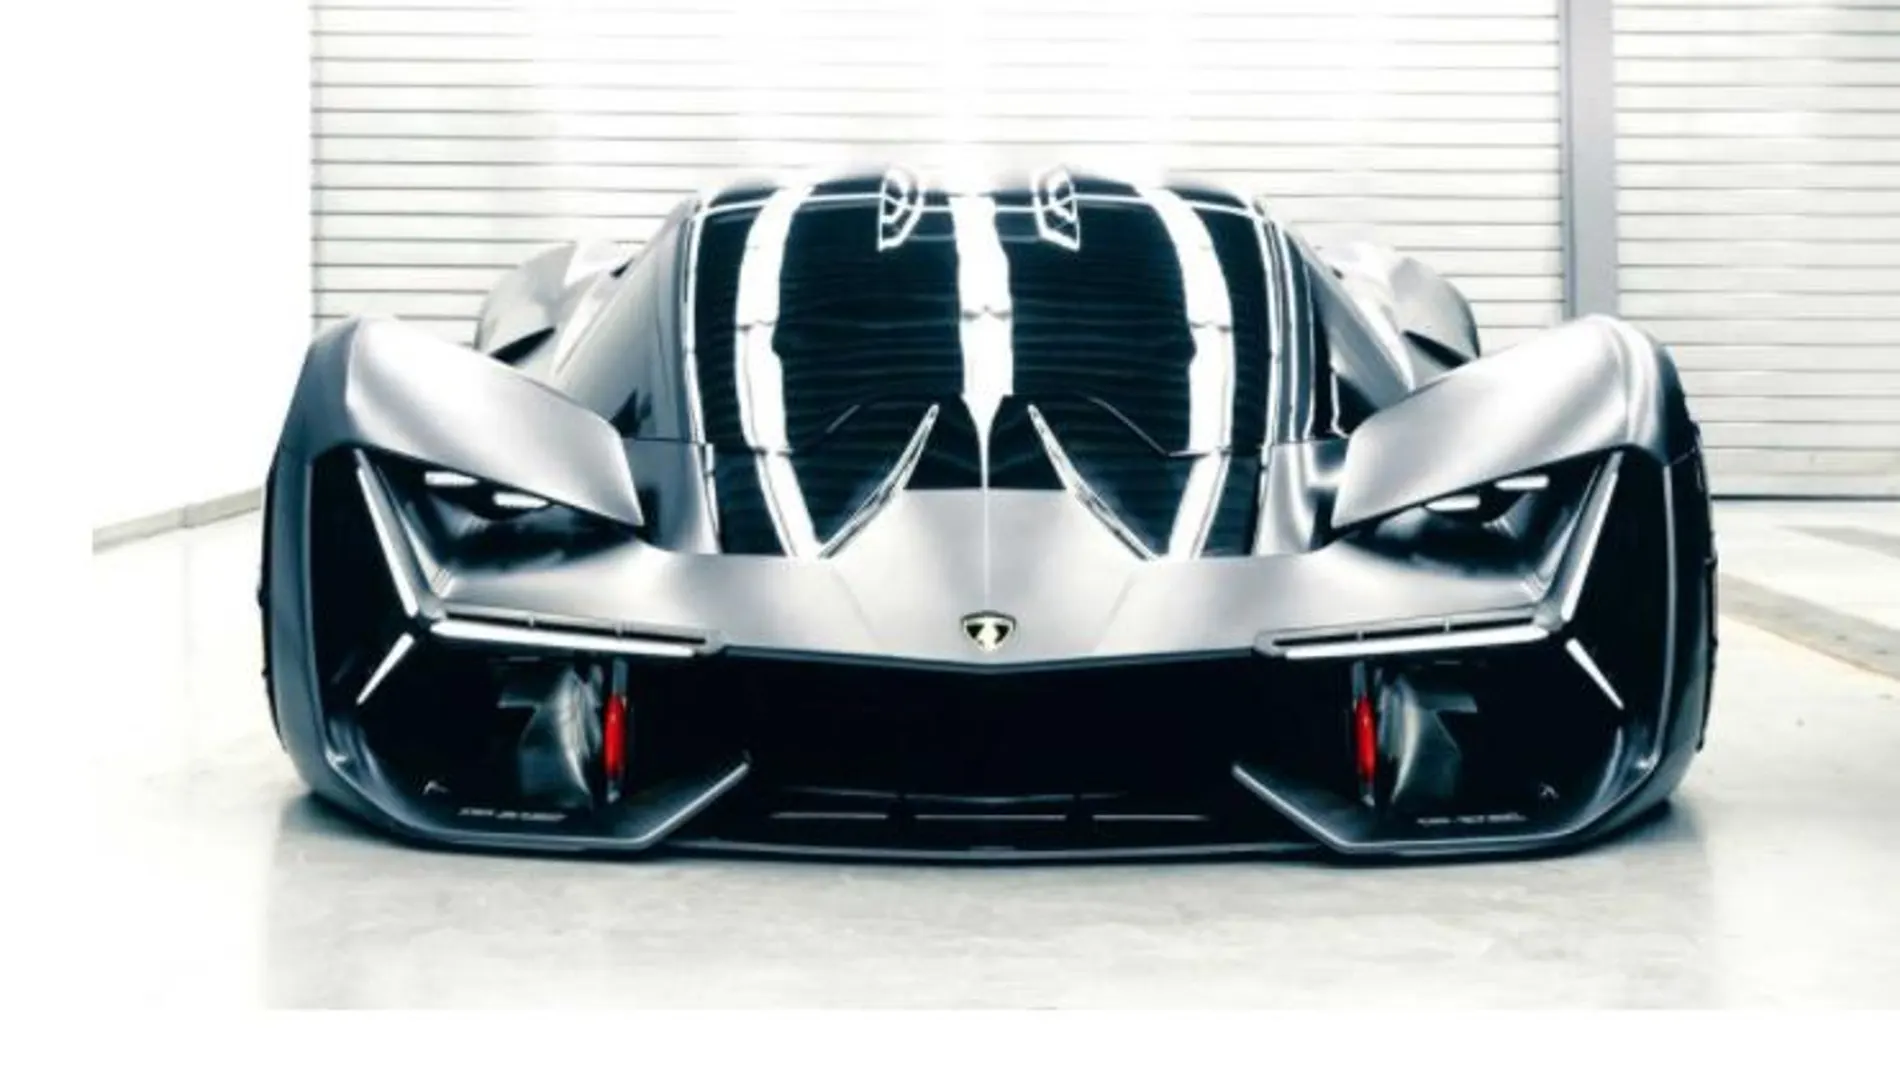 Buenas noticias: el Lamborghini eléctrico podría llegar antes de lo esperado